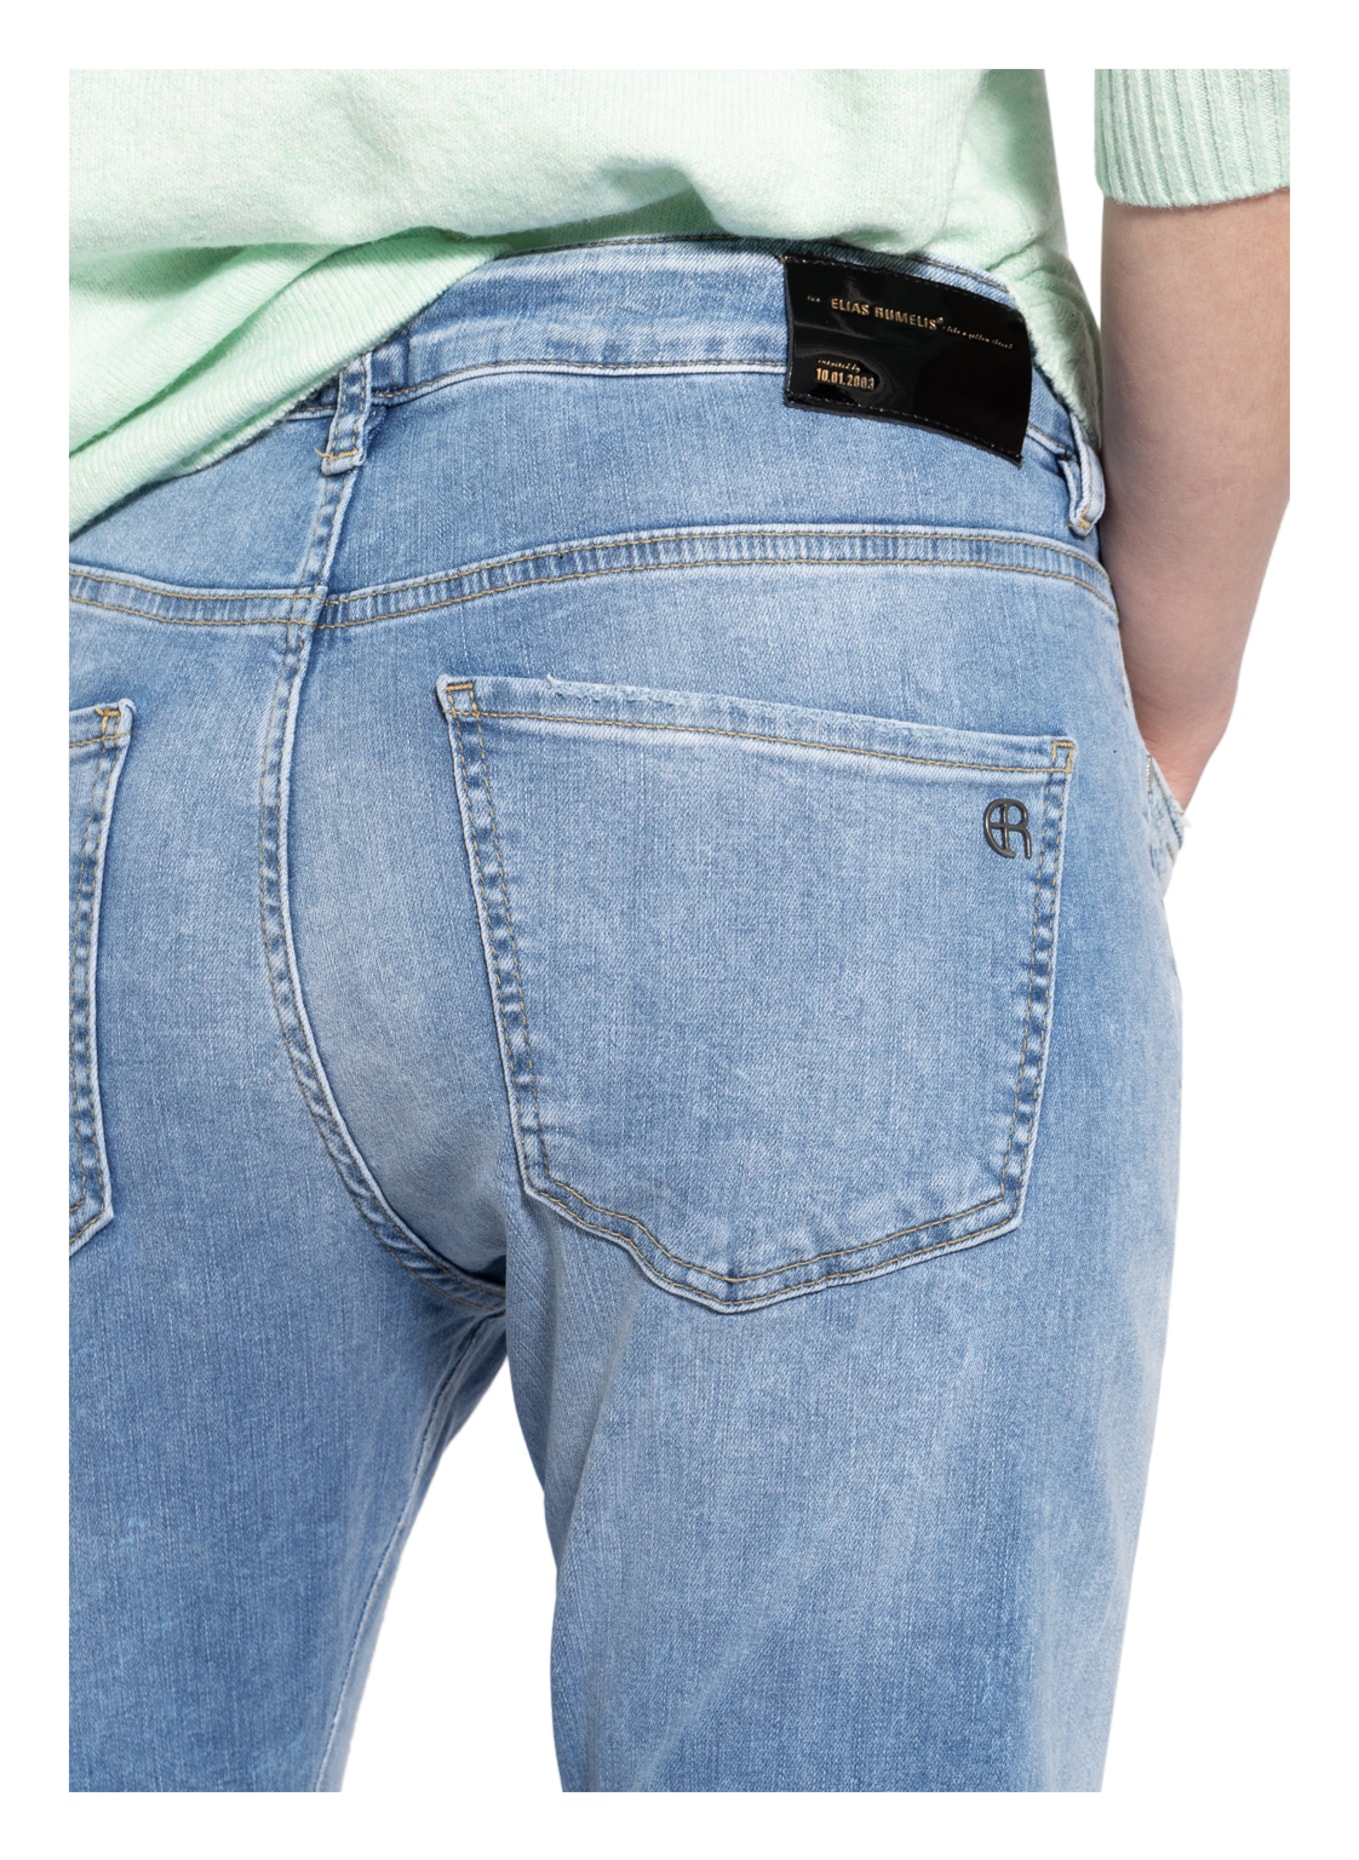 ELIAS RUMELIS Boyfriend jeans ERLEONA , Color: 568 berry blue (Image 5)